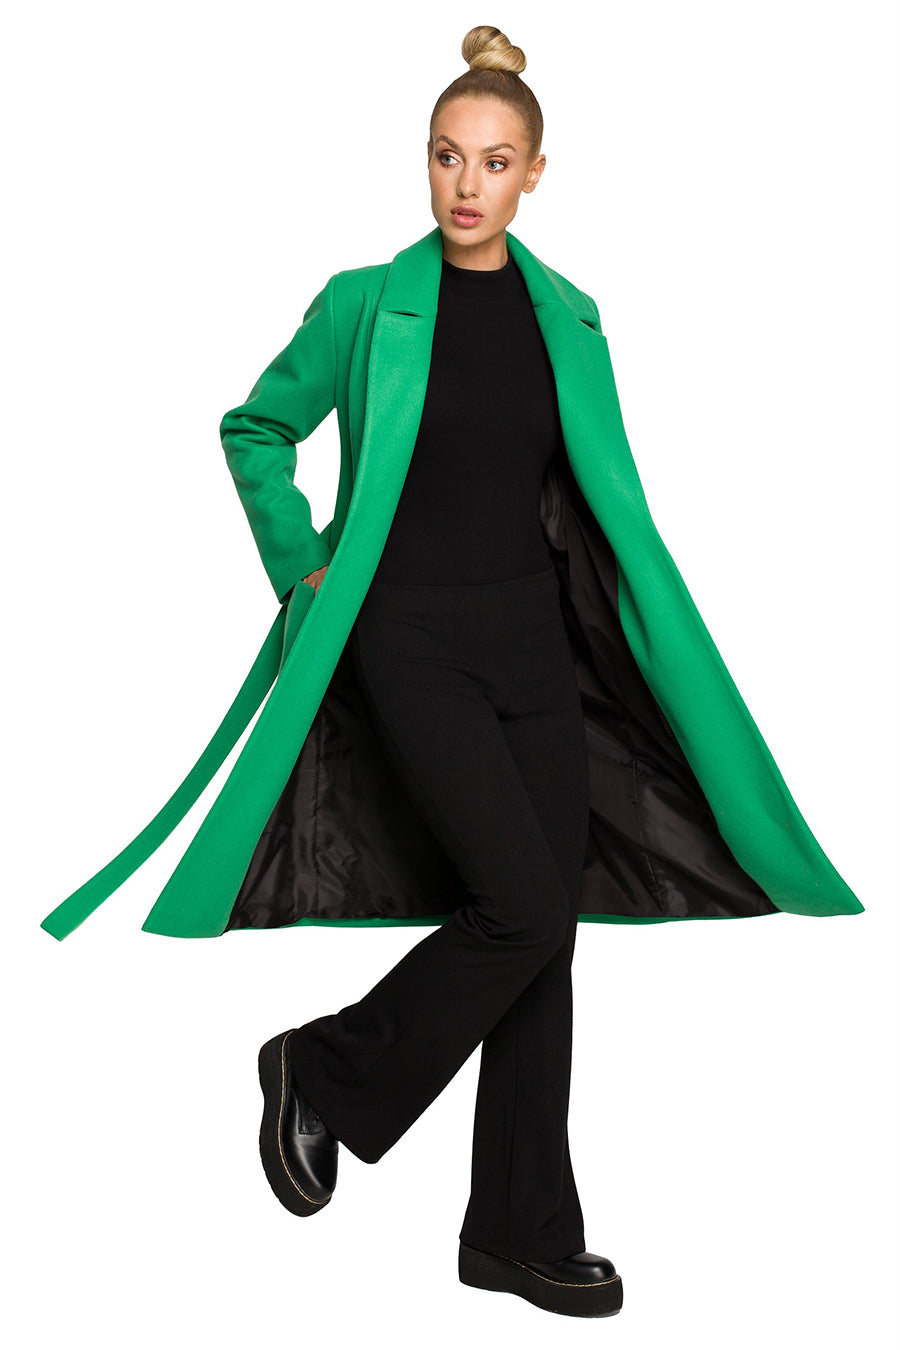 Γυναικείο παλτό Polymnia, Πράσινο 3